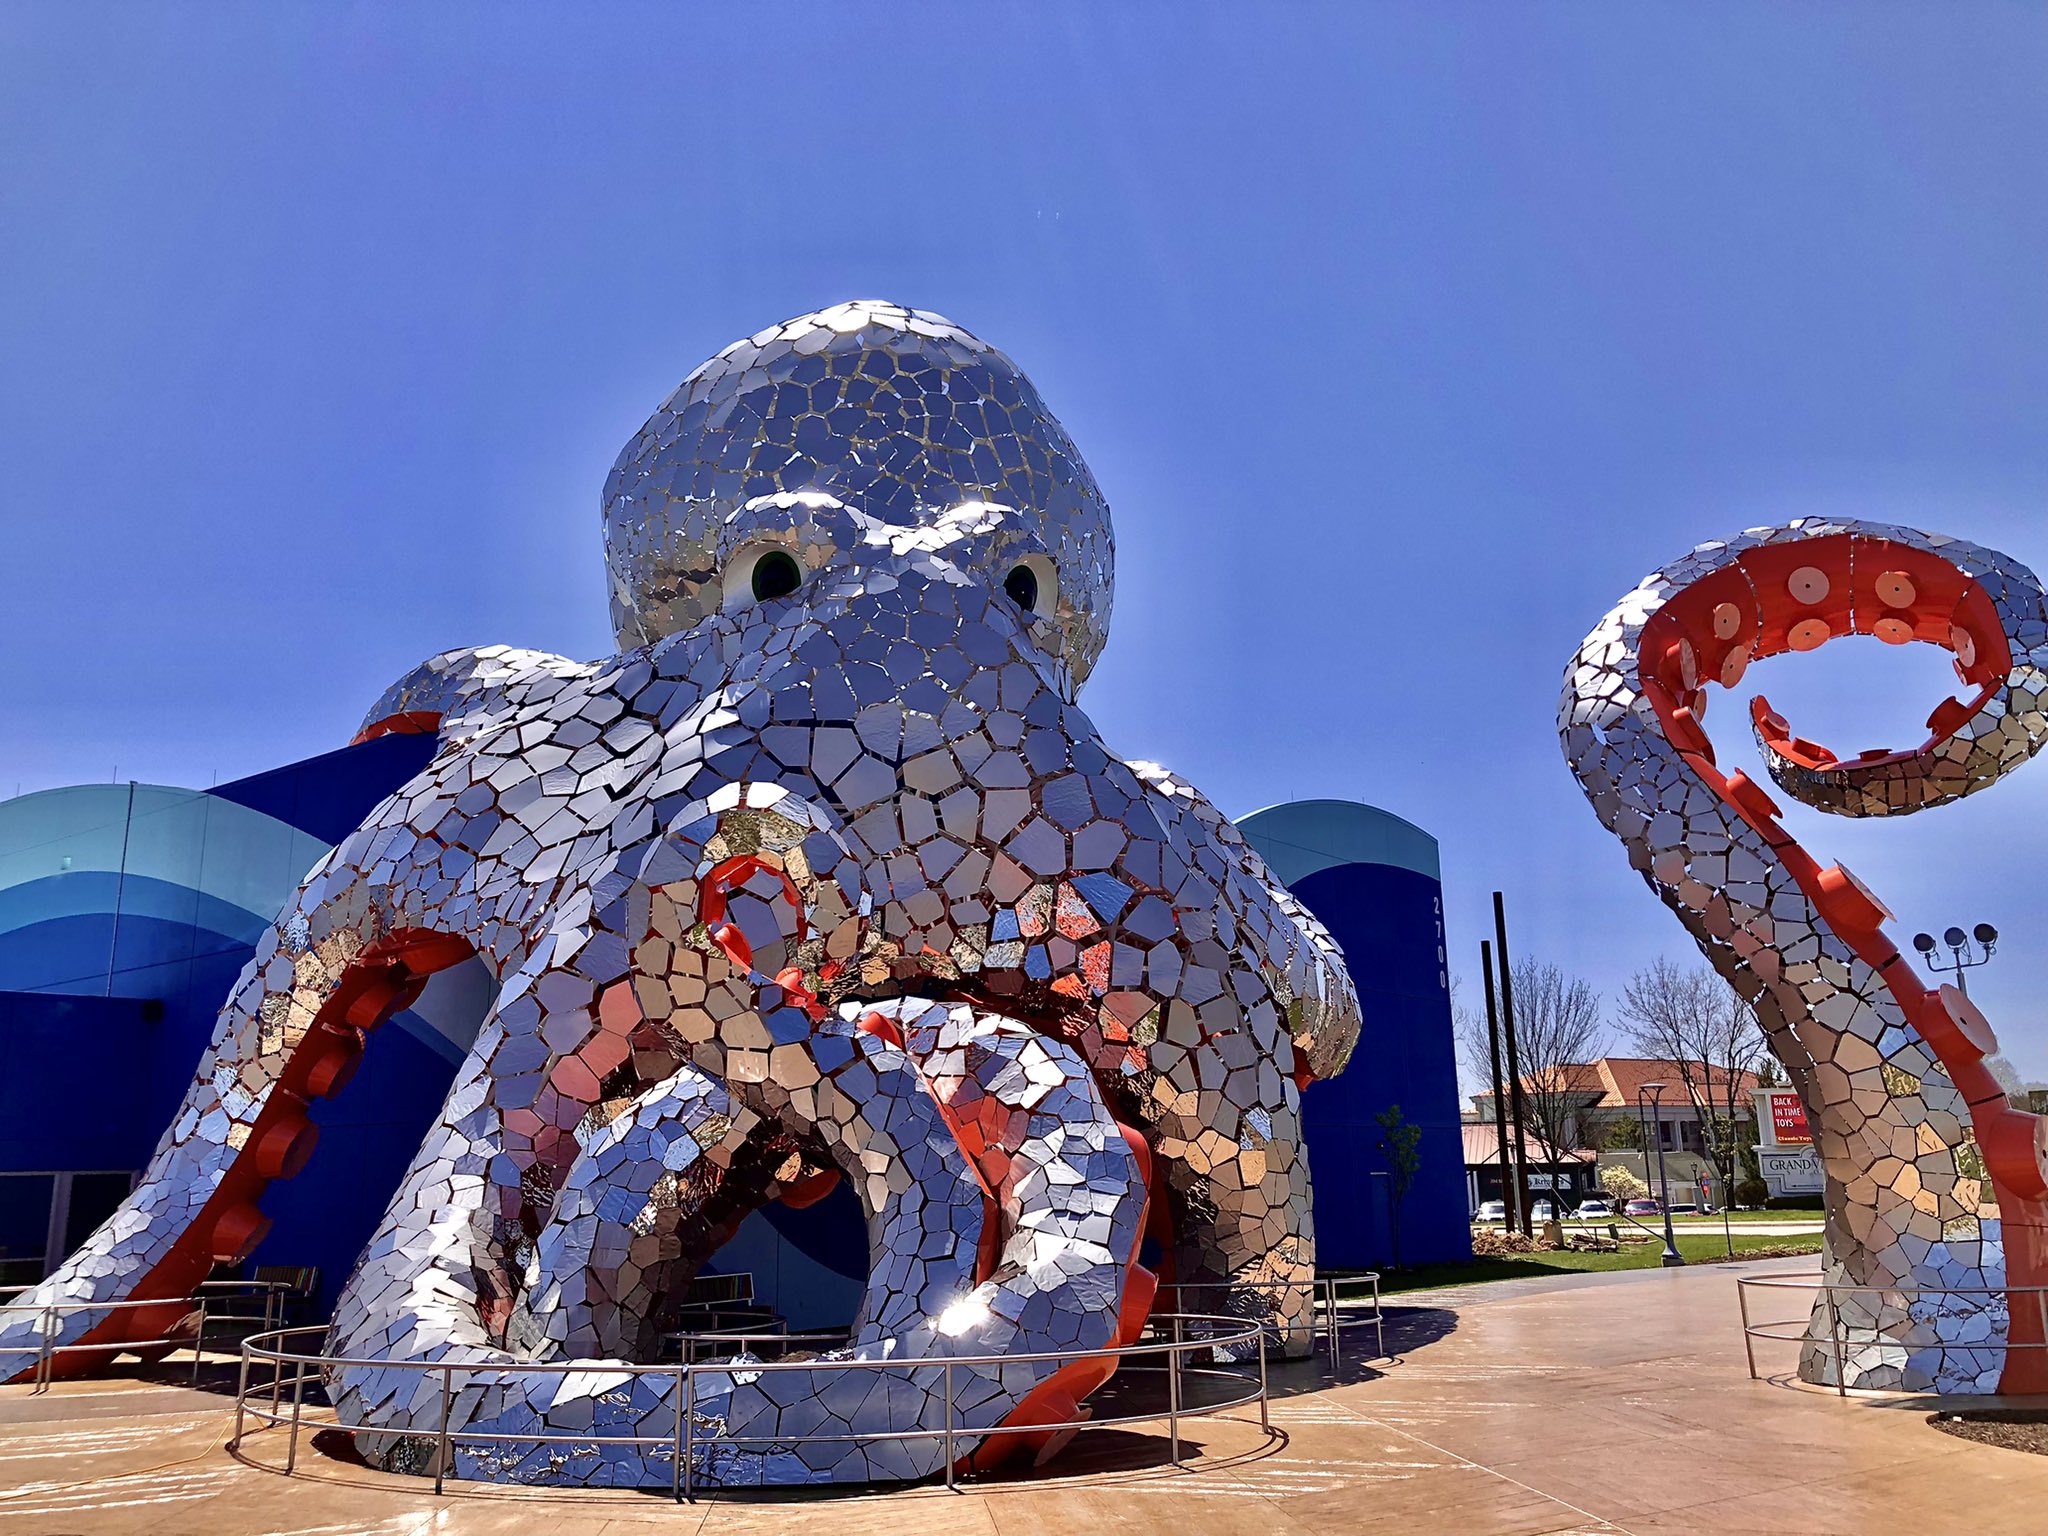 Octopus sculpture at aquarium in branson mo